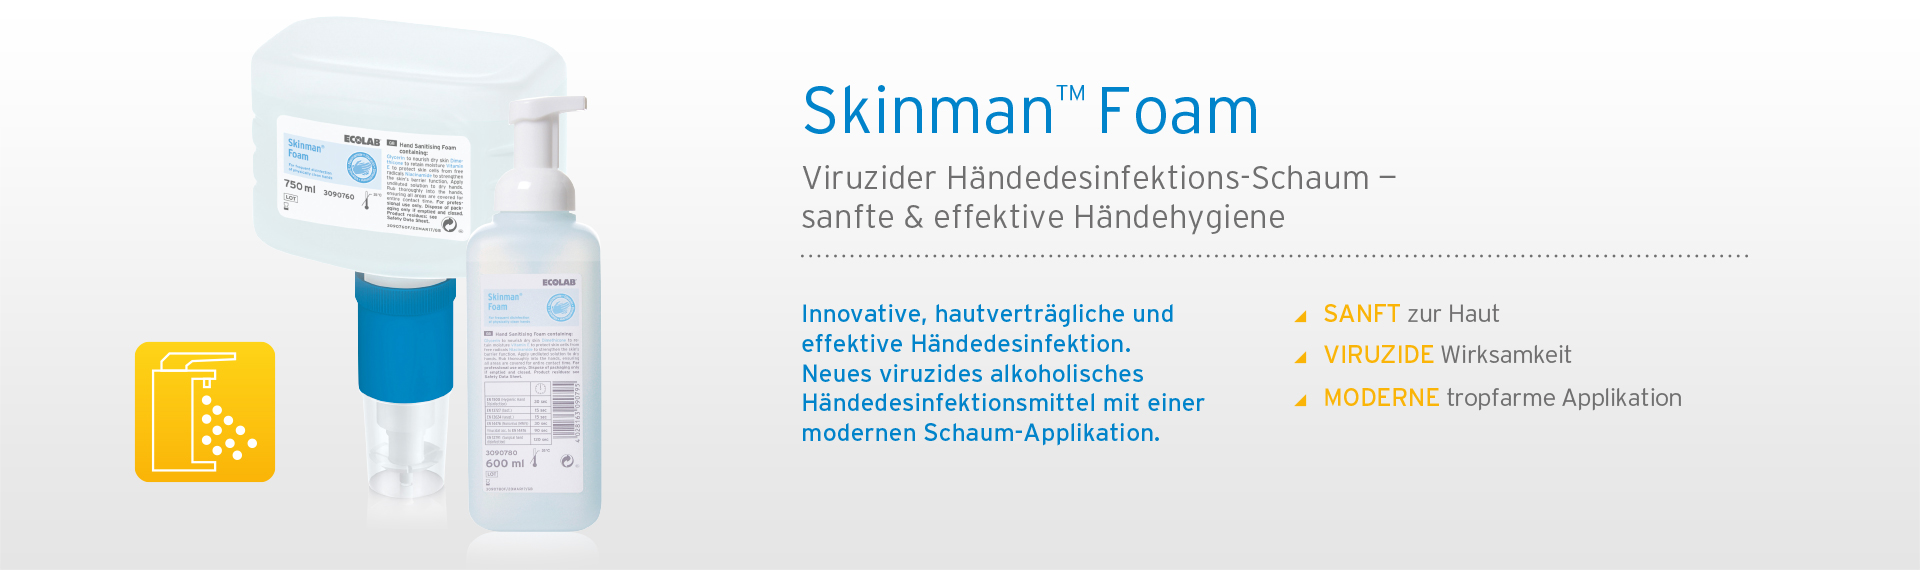 Skinman Foam